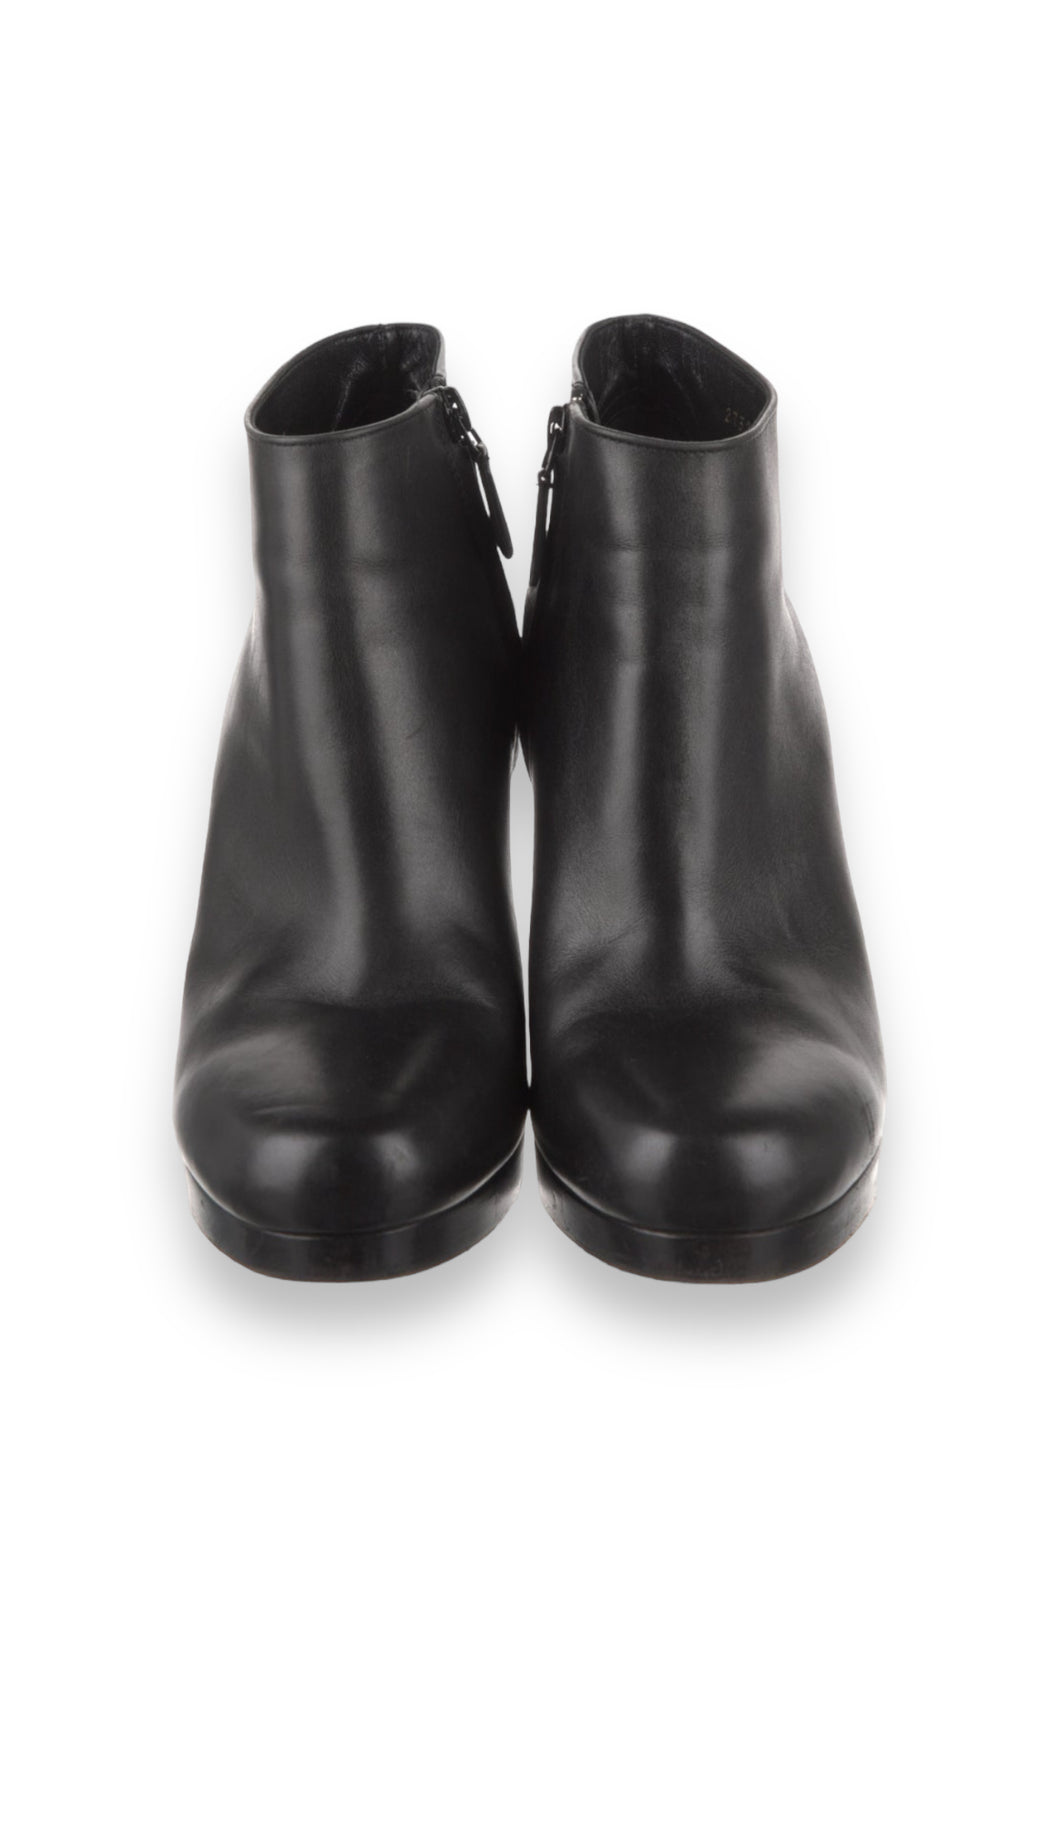 Balenciaga leður boots (36)